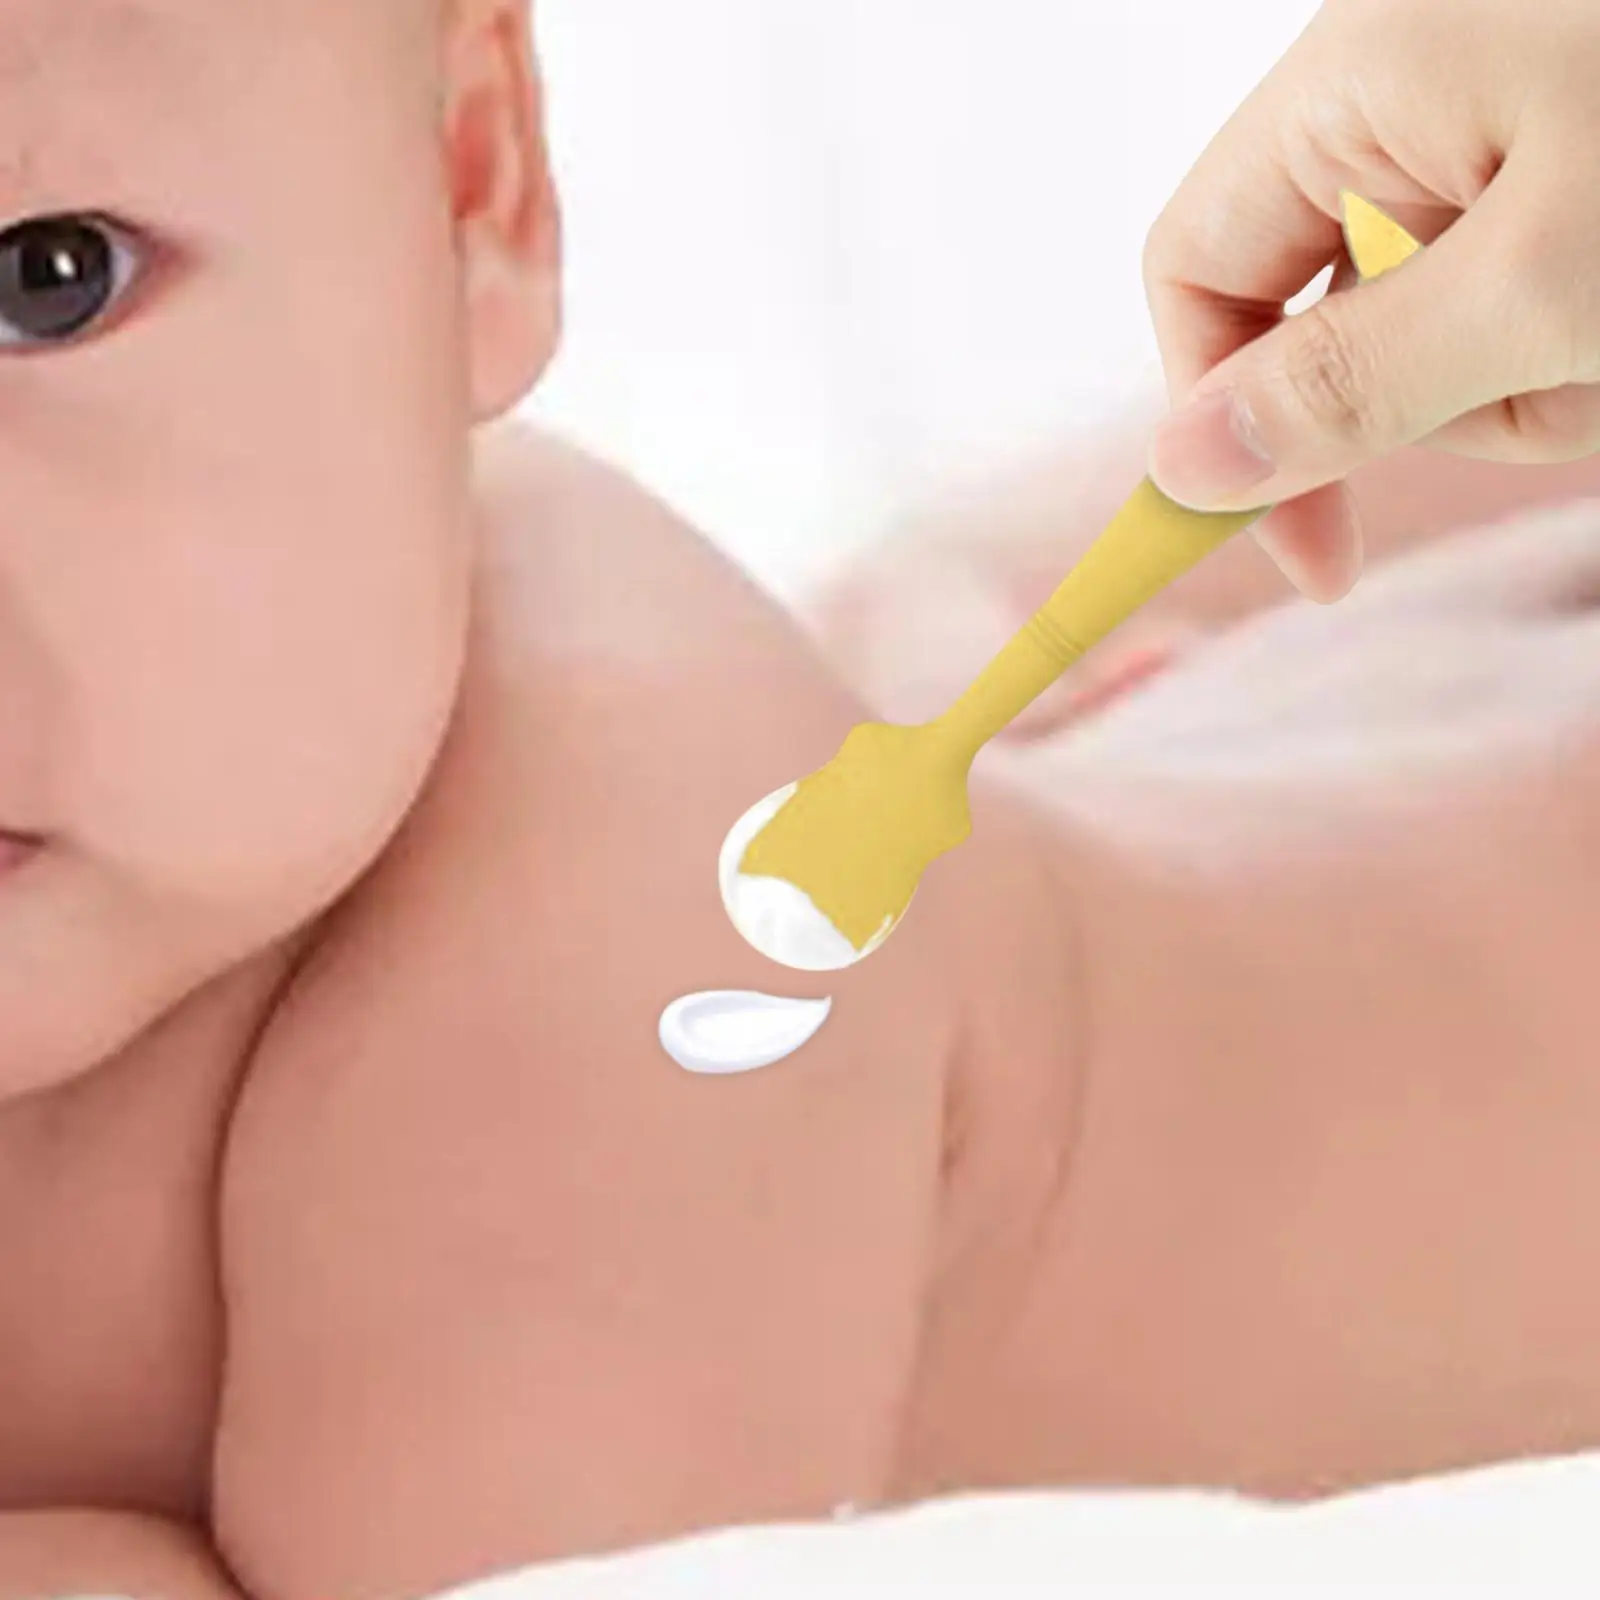 Diaper Cream Spatula Baby Brush Mini Rash Cream Brush Soft Cream Spatula Applicator for Baby Girls Newborn Boys Birthday Gifts